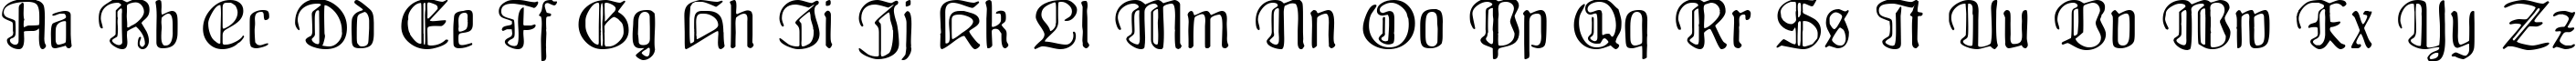 Пример написания английского алфавита шрифтом Fraenkisch